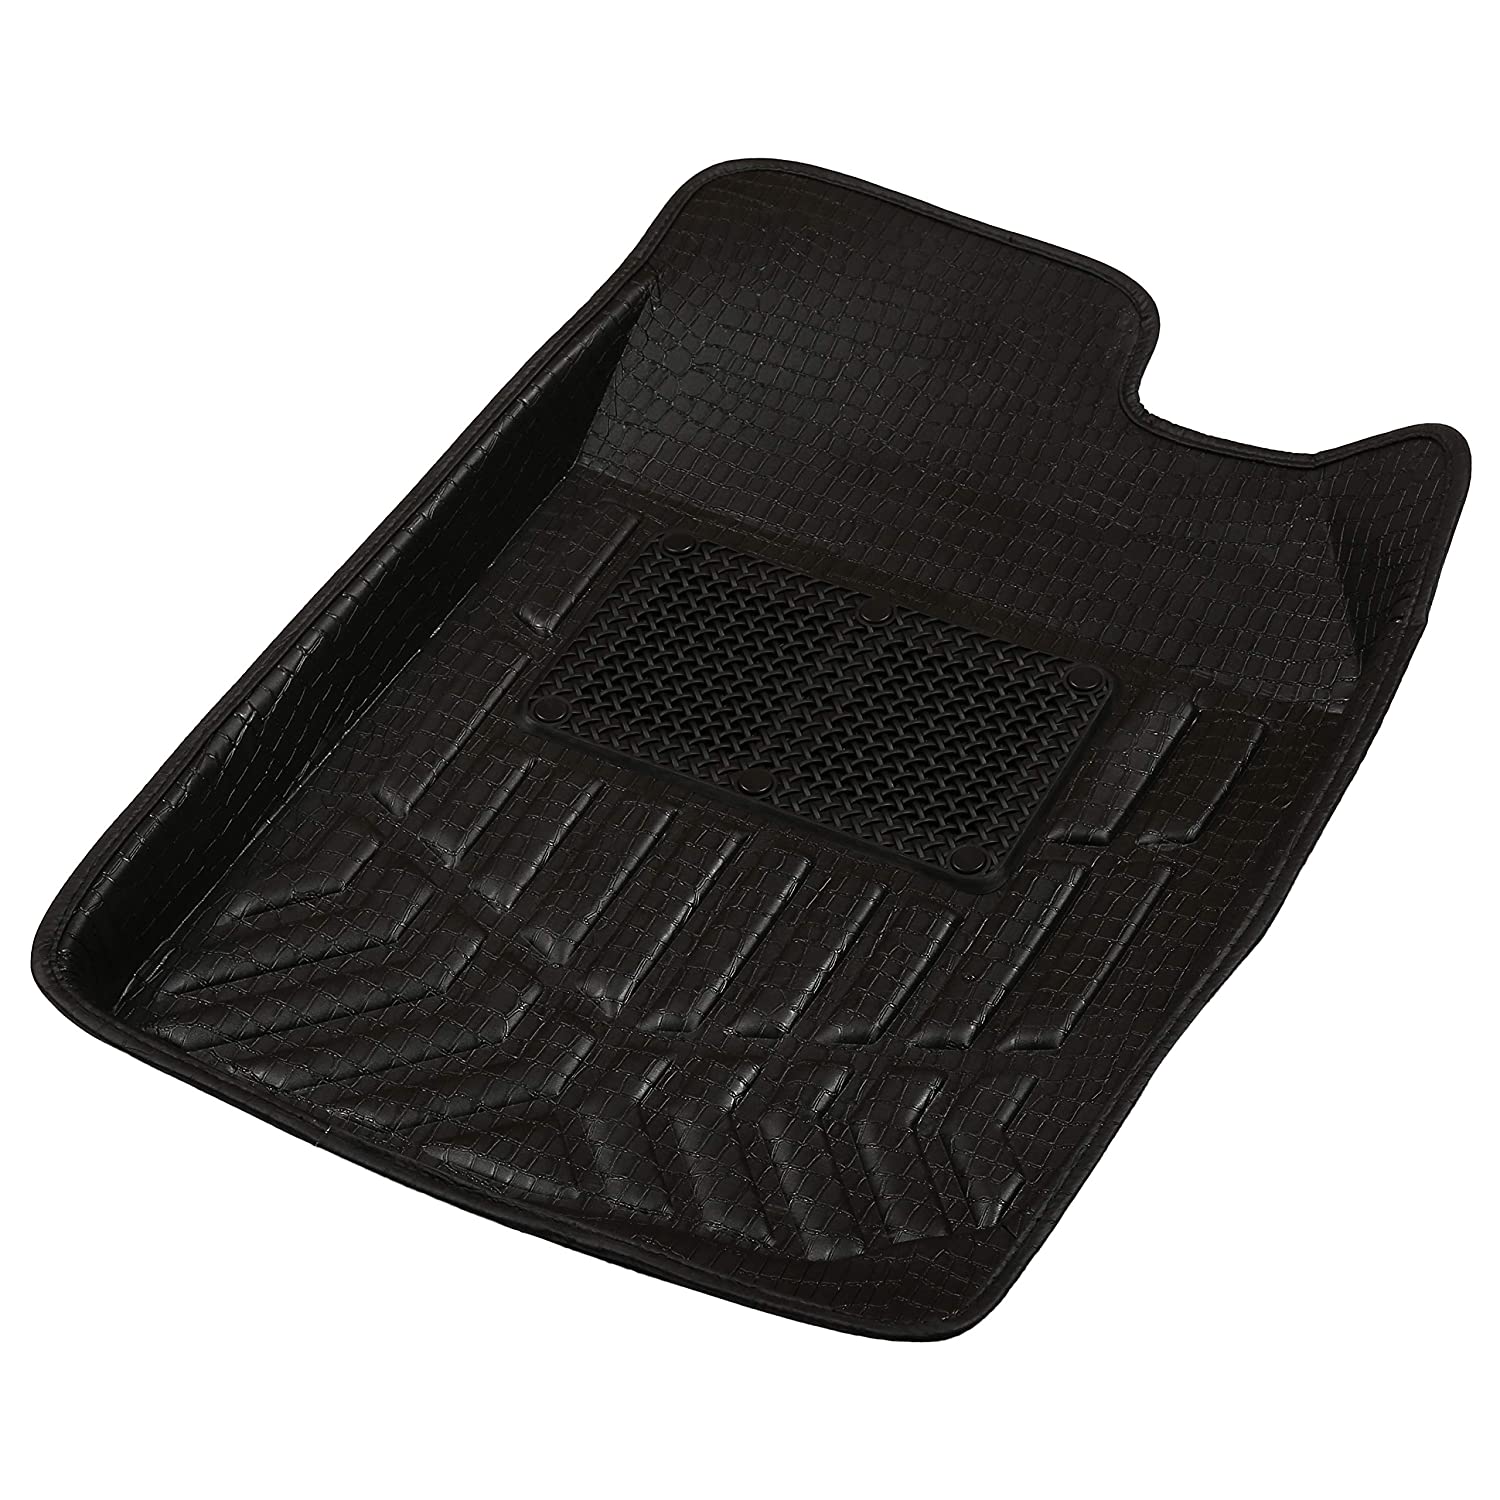 Drivn 3D Customised Car Floor Mat for Skoda Vento - Black (Set of 3)